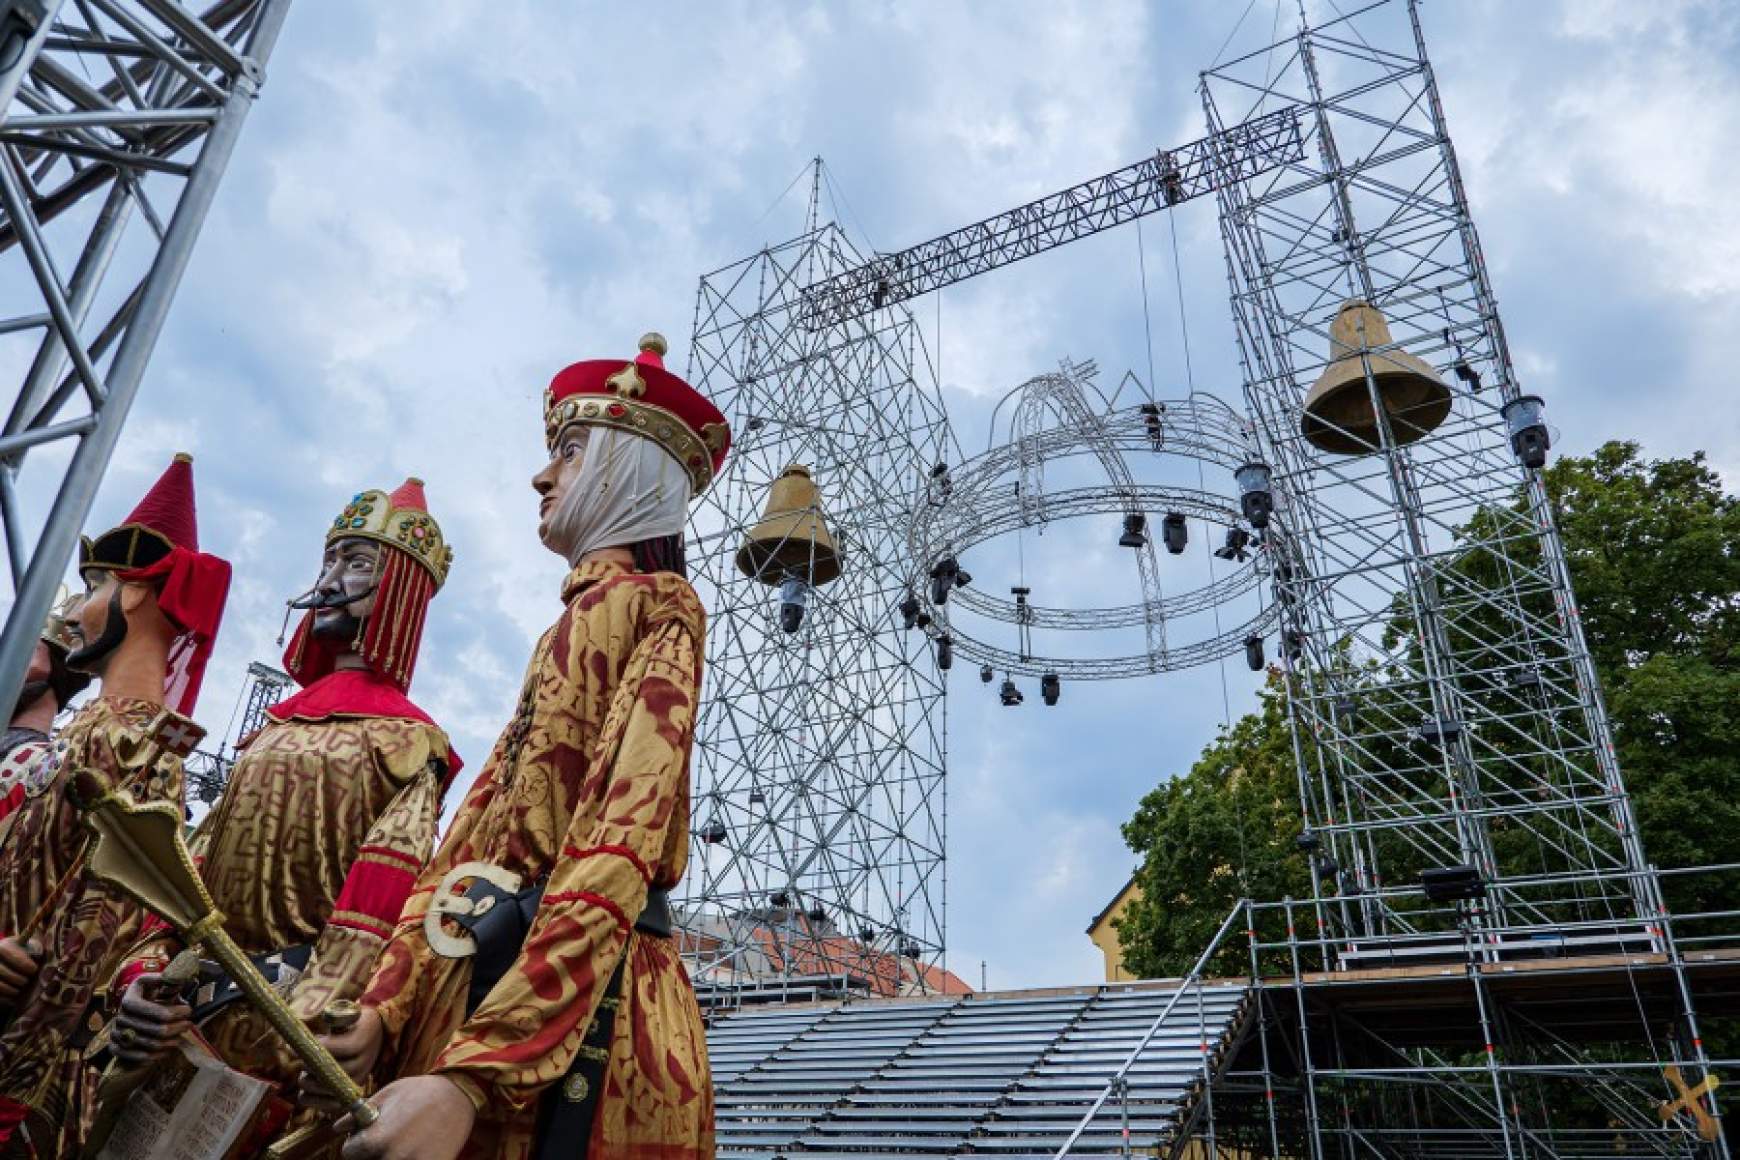 Utolsóként III. Andrást koronázzák királlyá a székesfehérvári Nemzeti Emlékhelyen